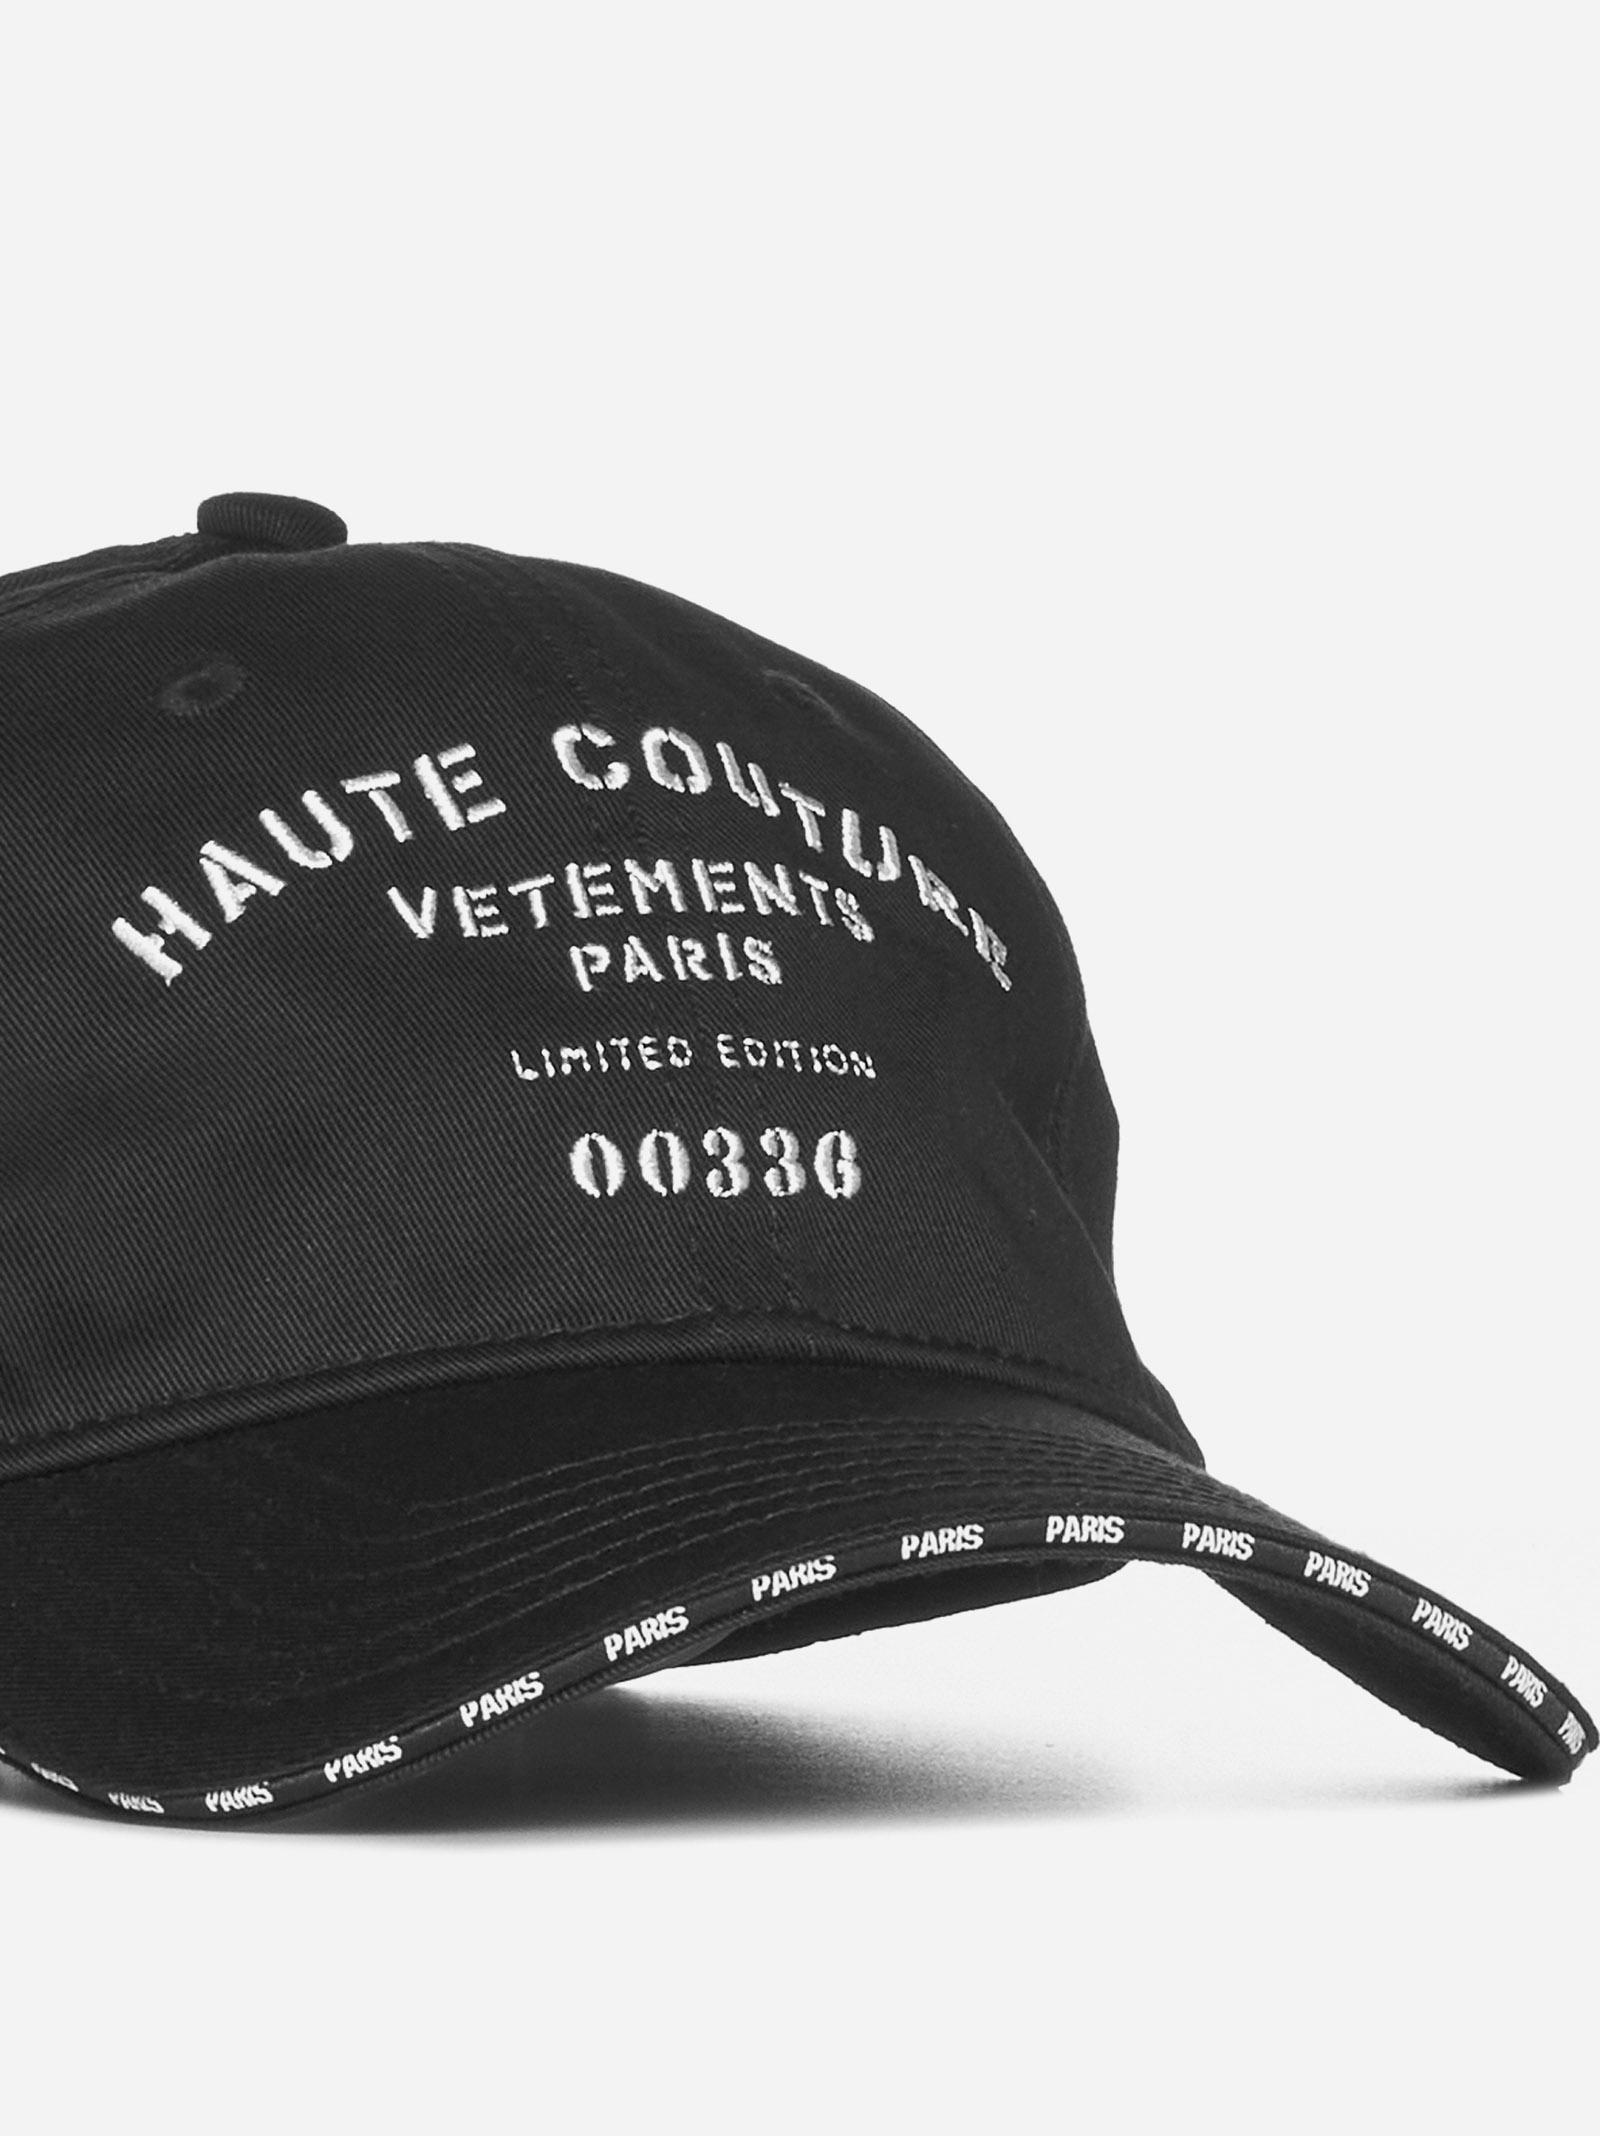 Vetements Maison De Couture Cotton Baseball Cap in Black | Lyst